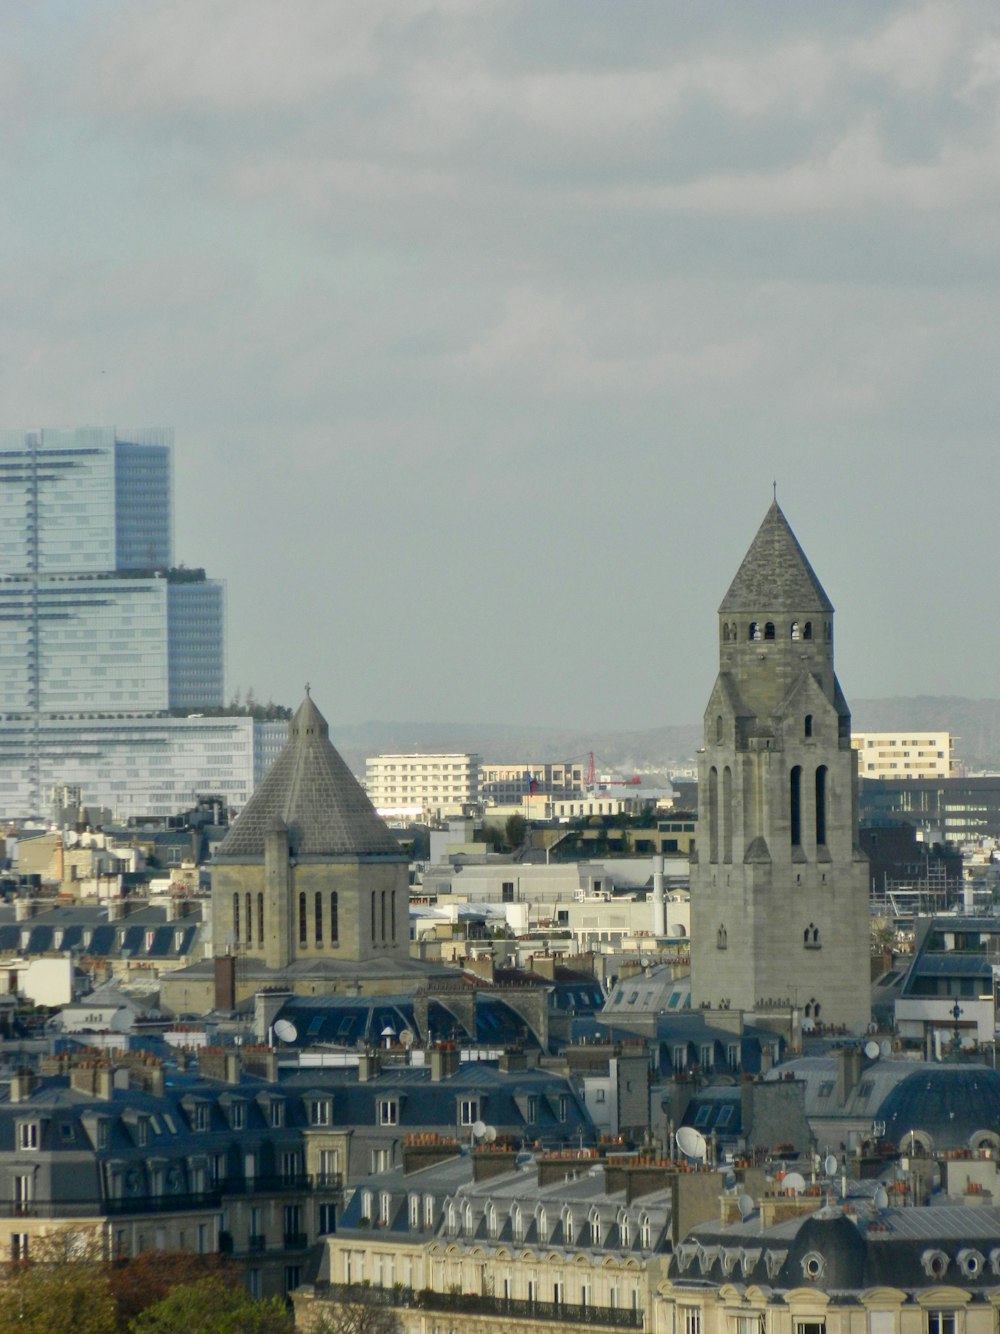 uma vista de uma cidade com edifícios altos e uma torre do relógio